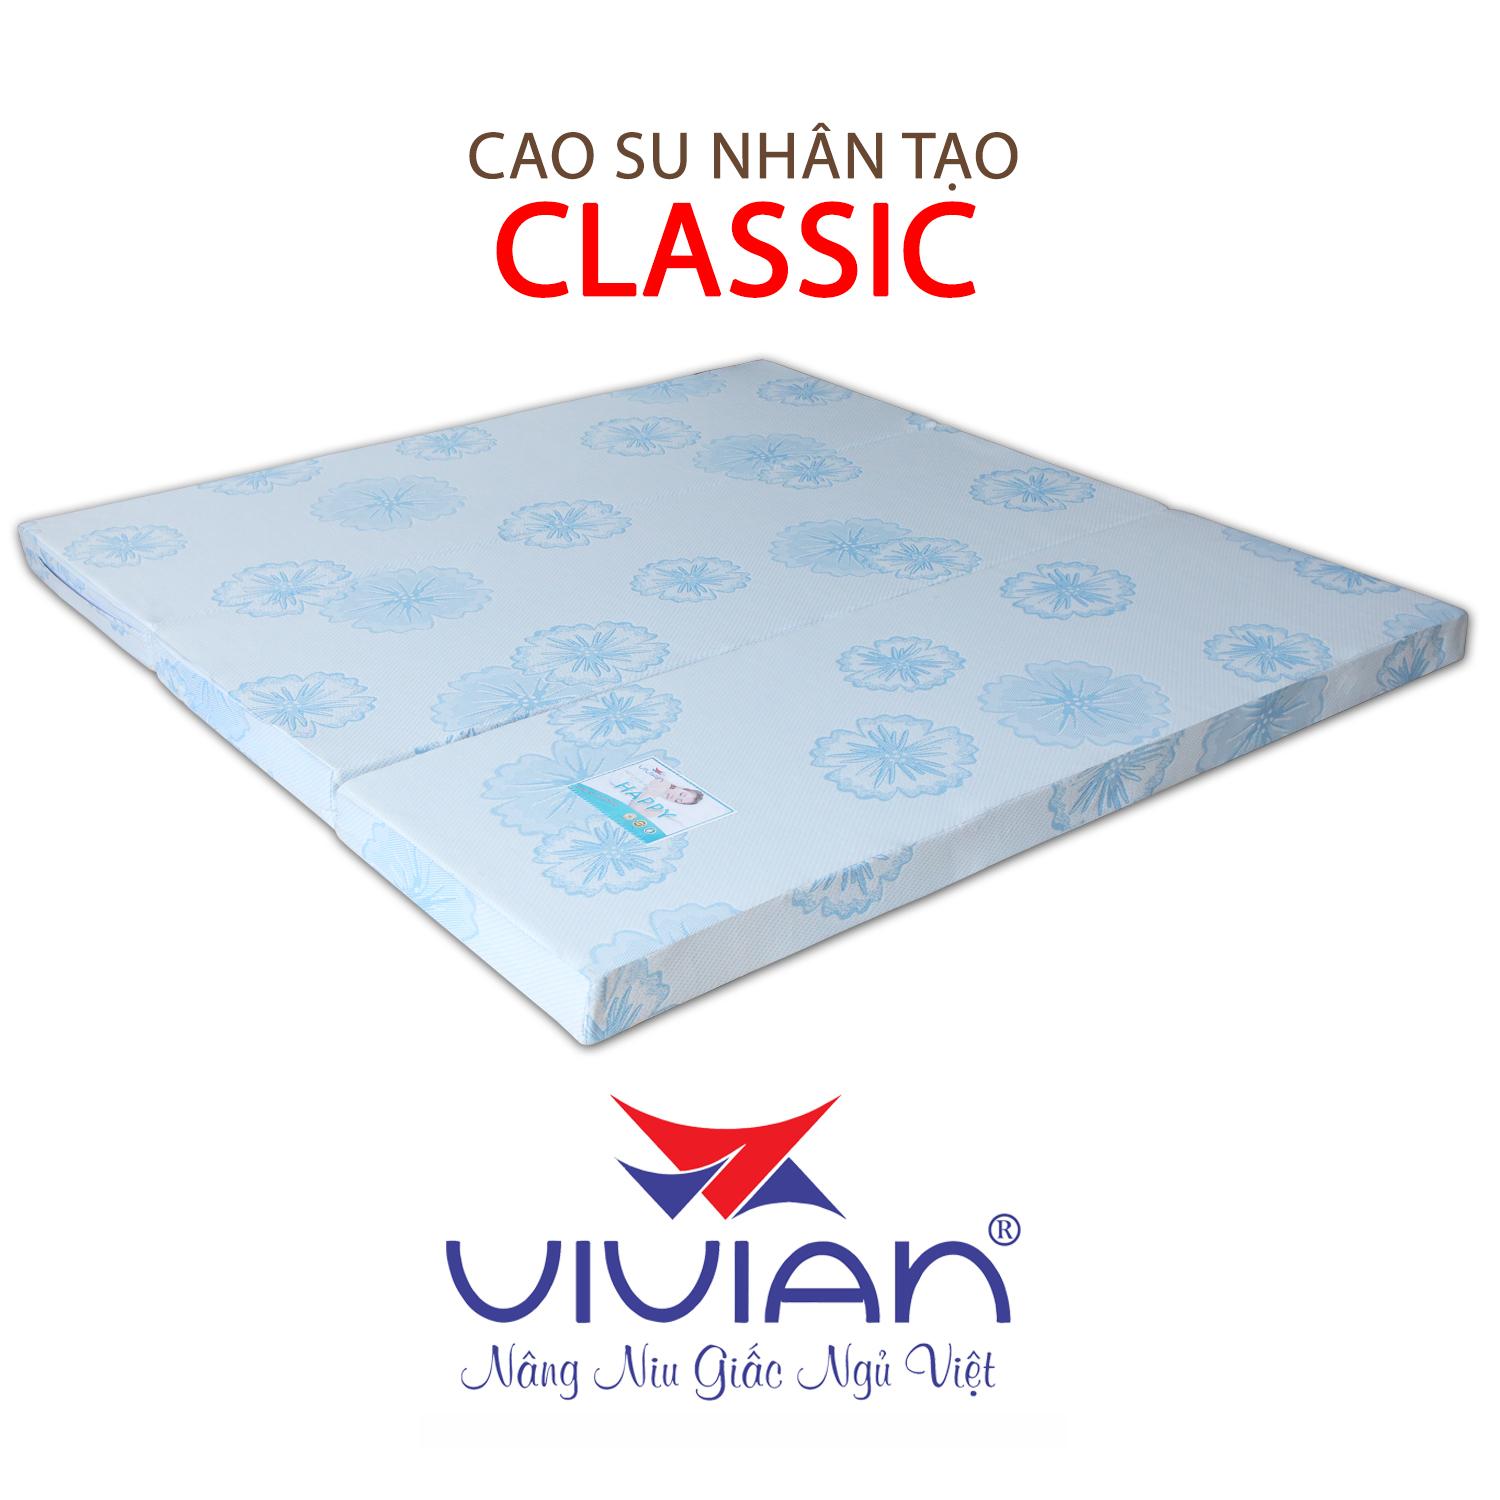 NỆM CAO SU NHÂN TẠO CLASSIC GẤP 3 VIVIAN 160X200X15